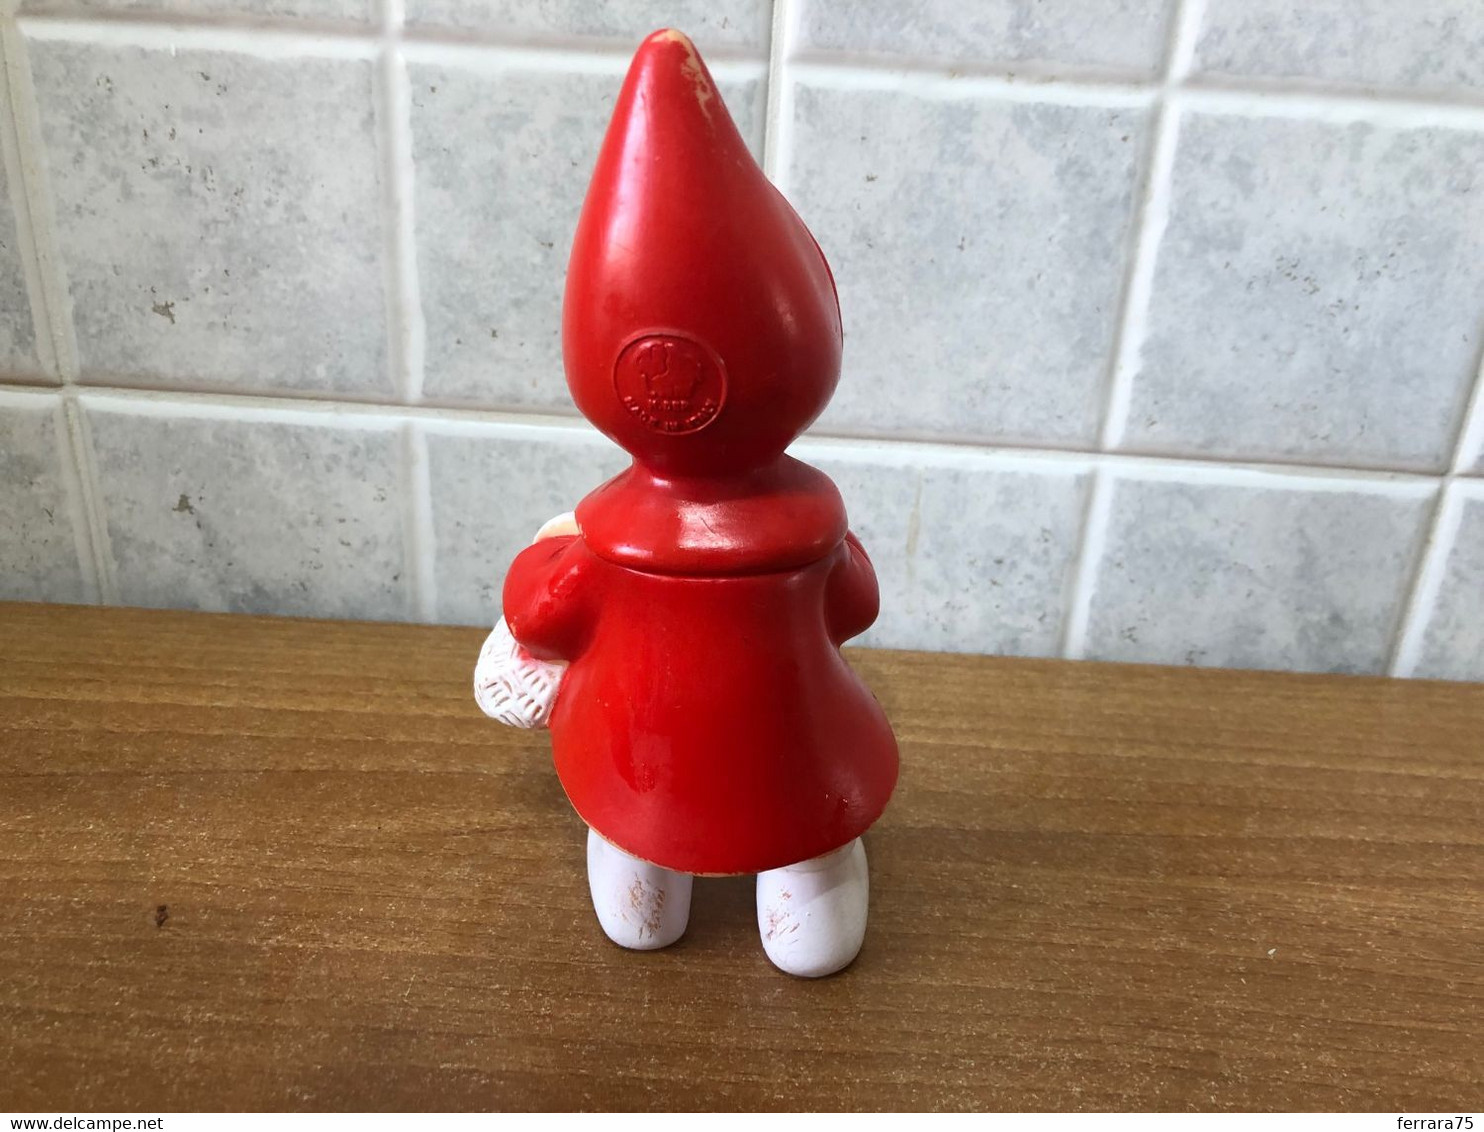 Raro pupazzo gomma Cappuccetto Rosso Ledra Plastic Walt Disney anni 60